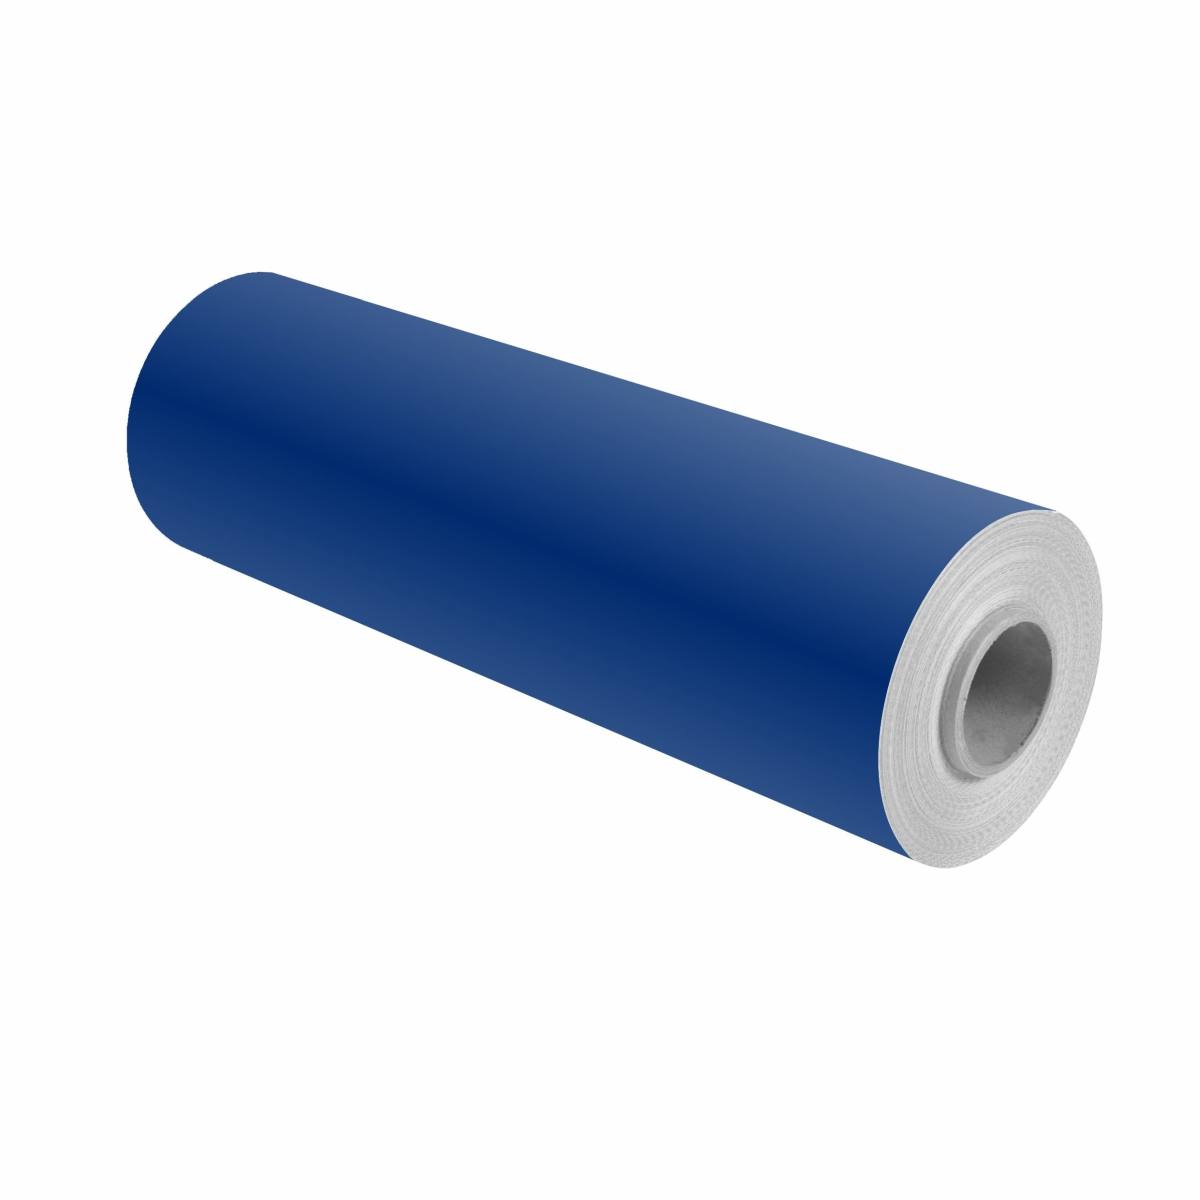 3M Scotchcal pellicola colorata 100-37 blu oltremare 1,22m x 50m